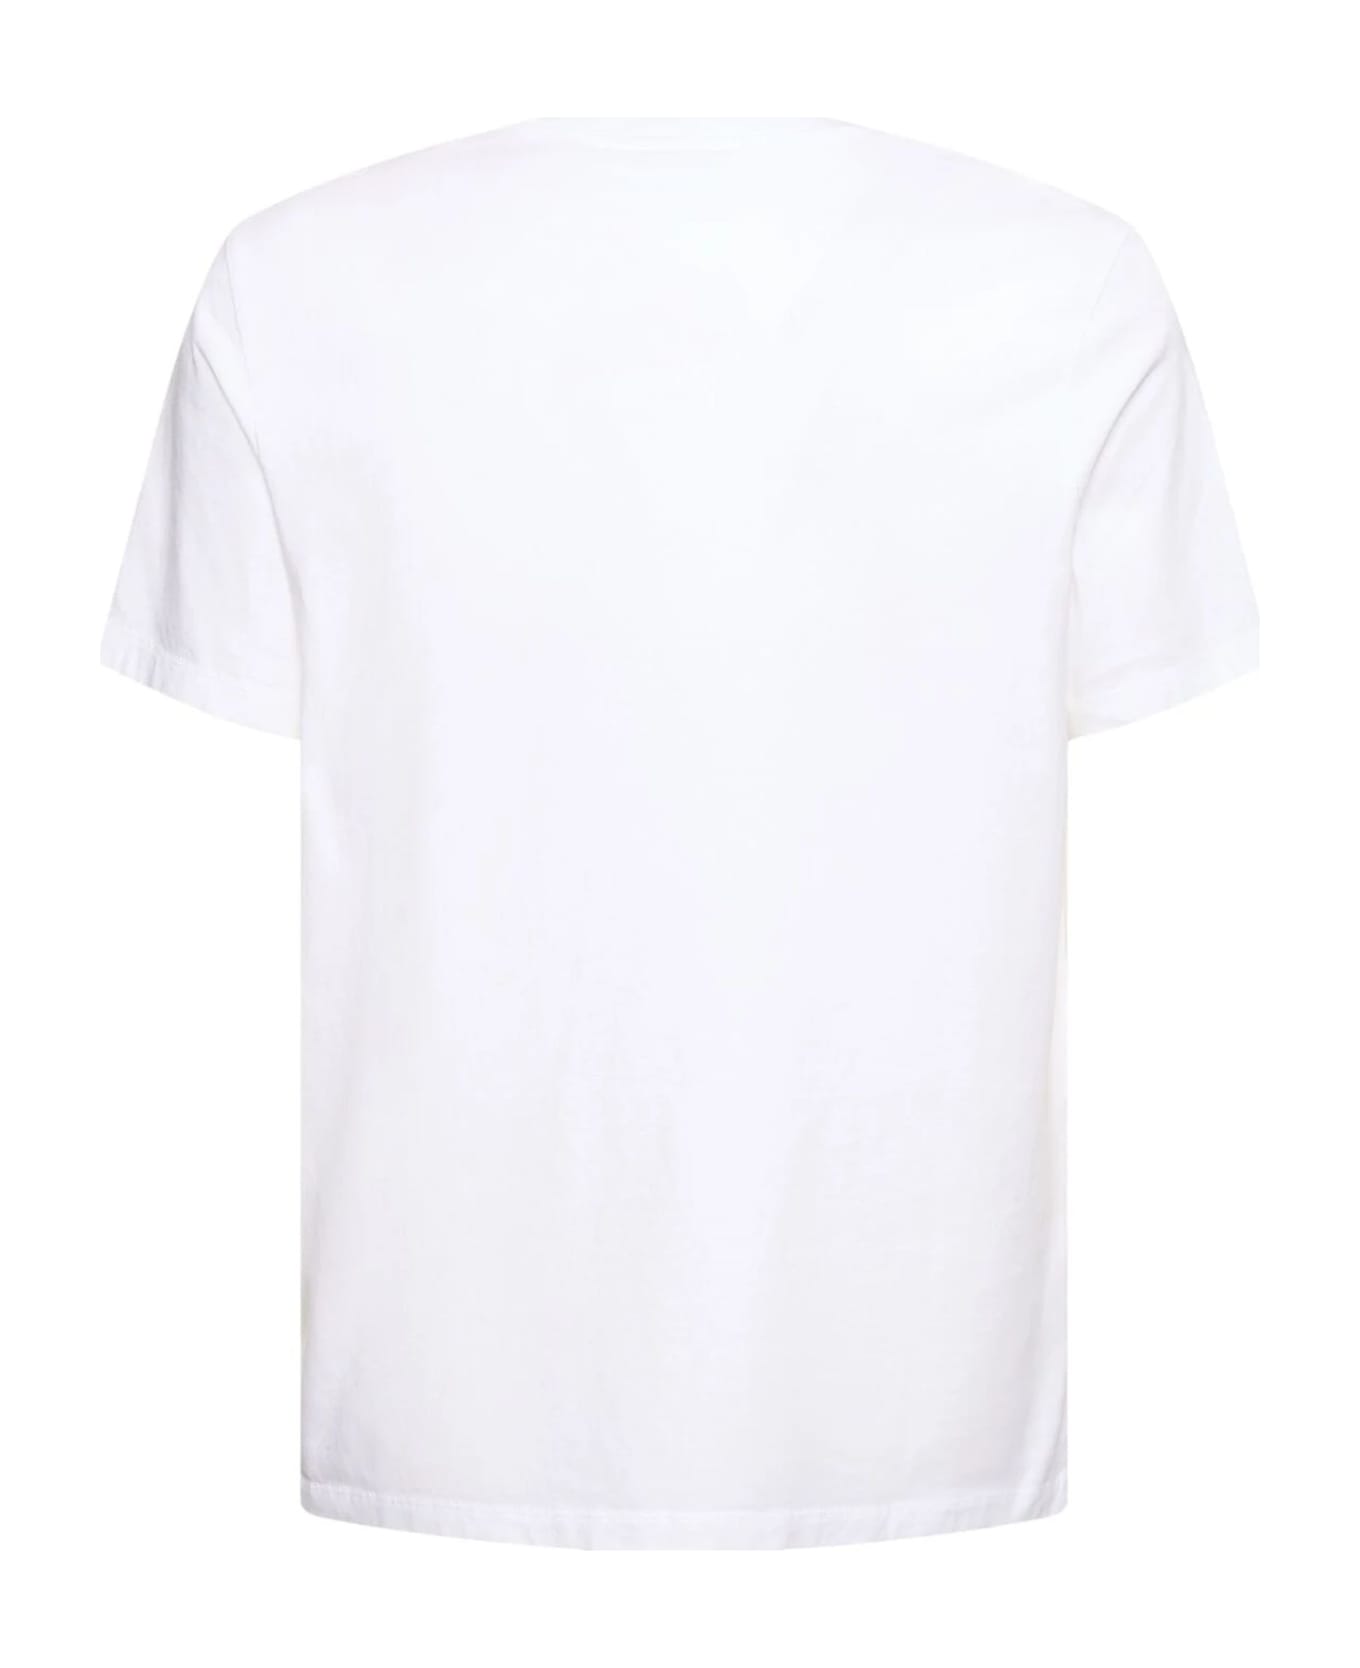 Maison Kitsuné Maison Kitsune' T-shirts And Polos White - White シャツ